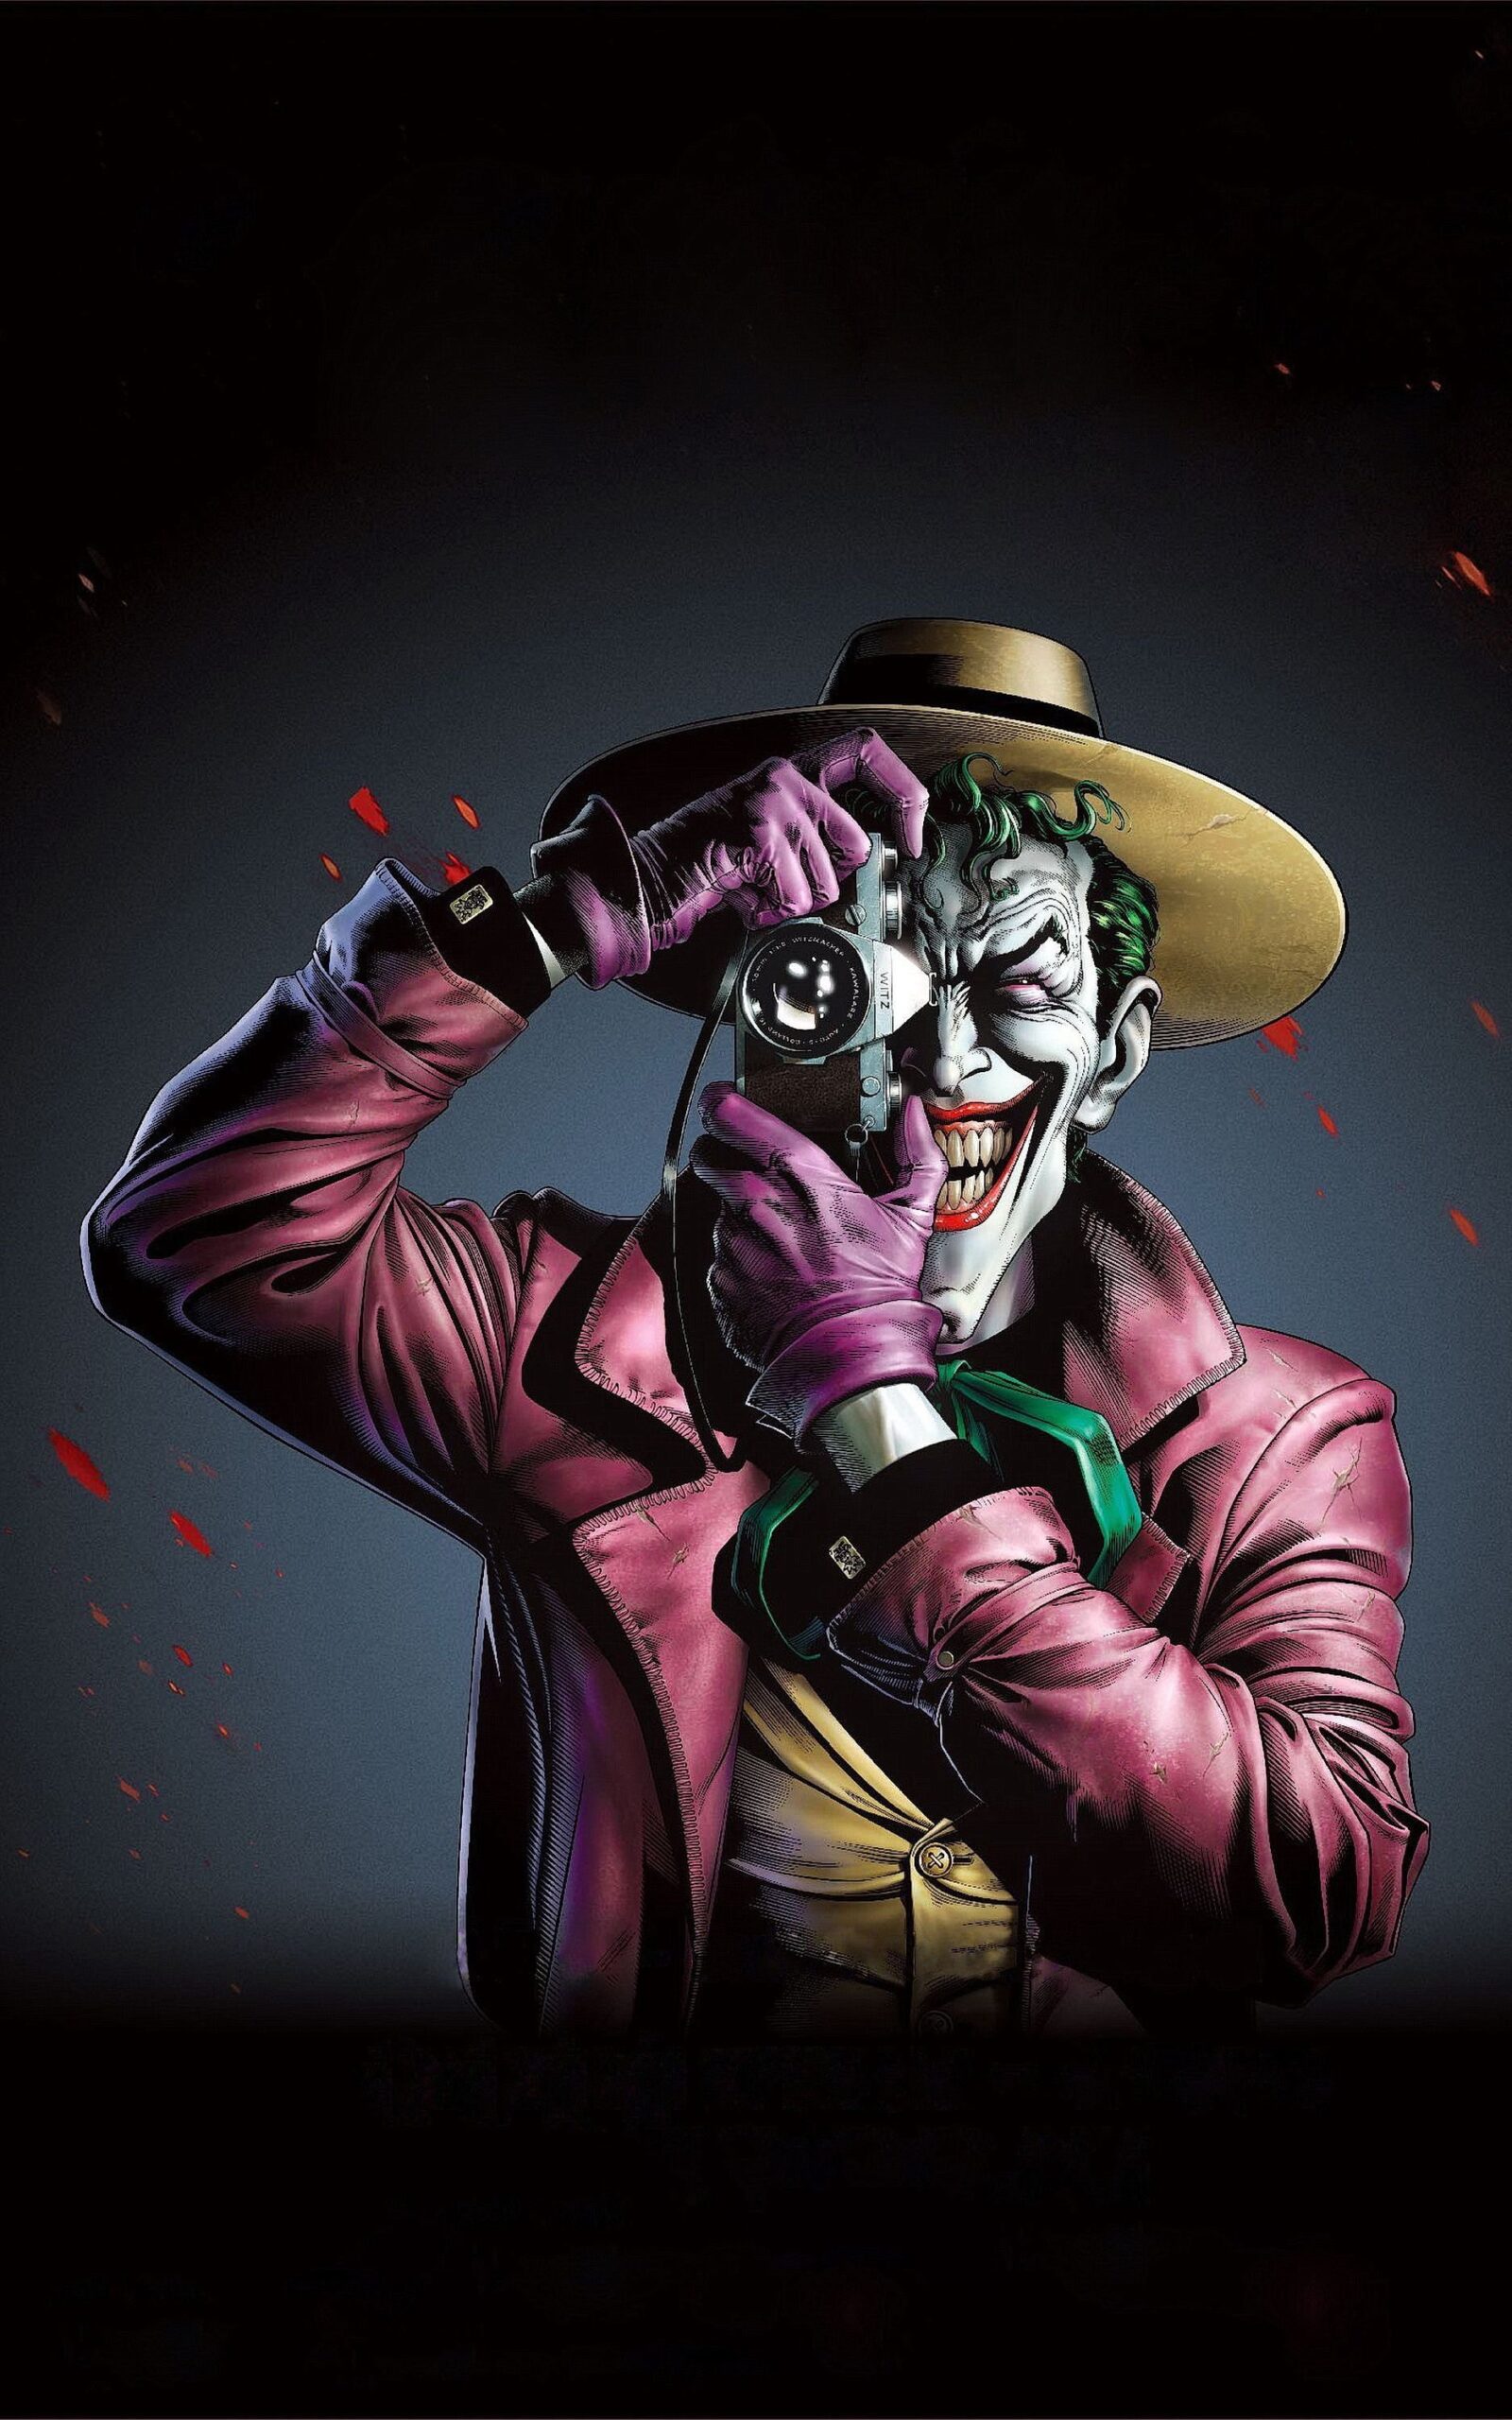 Tặng bạn Hình Joker độc đáo